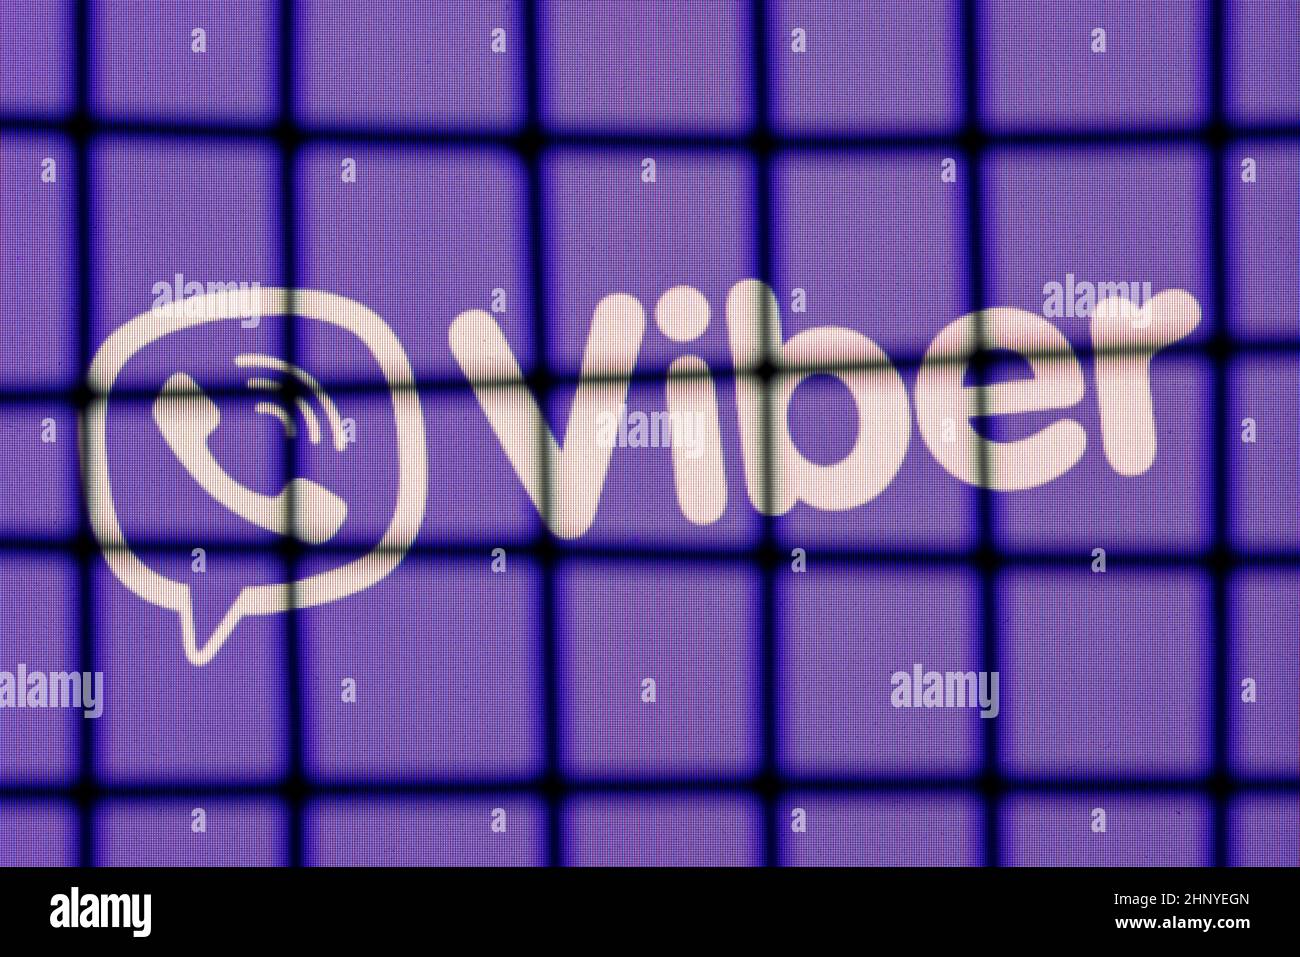 El logotipo del servicio de mensajería instantánea Viber detrás de las barras. El concepto de censura y prohibición Viber. Foto de stock